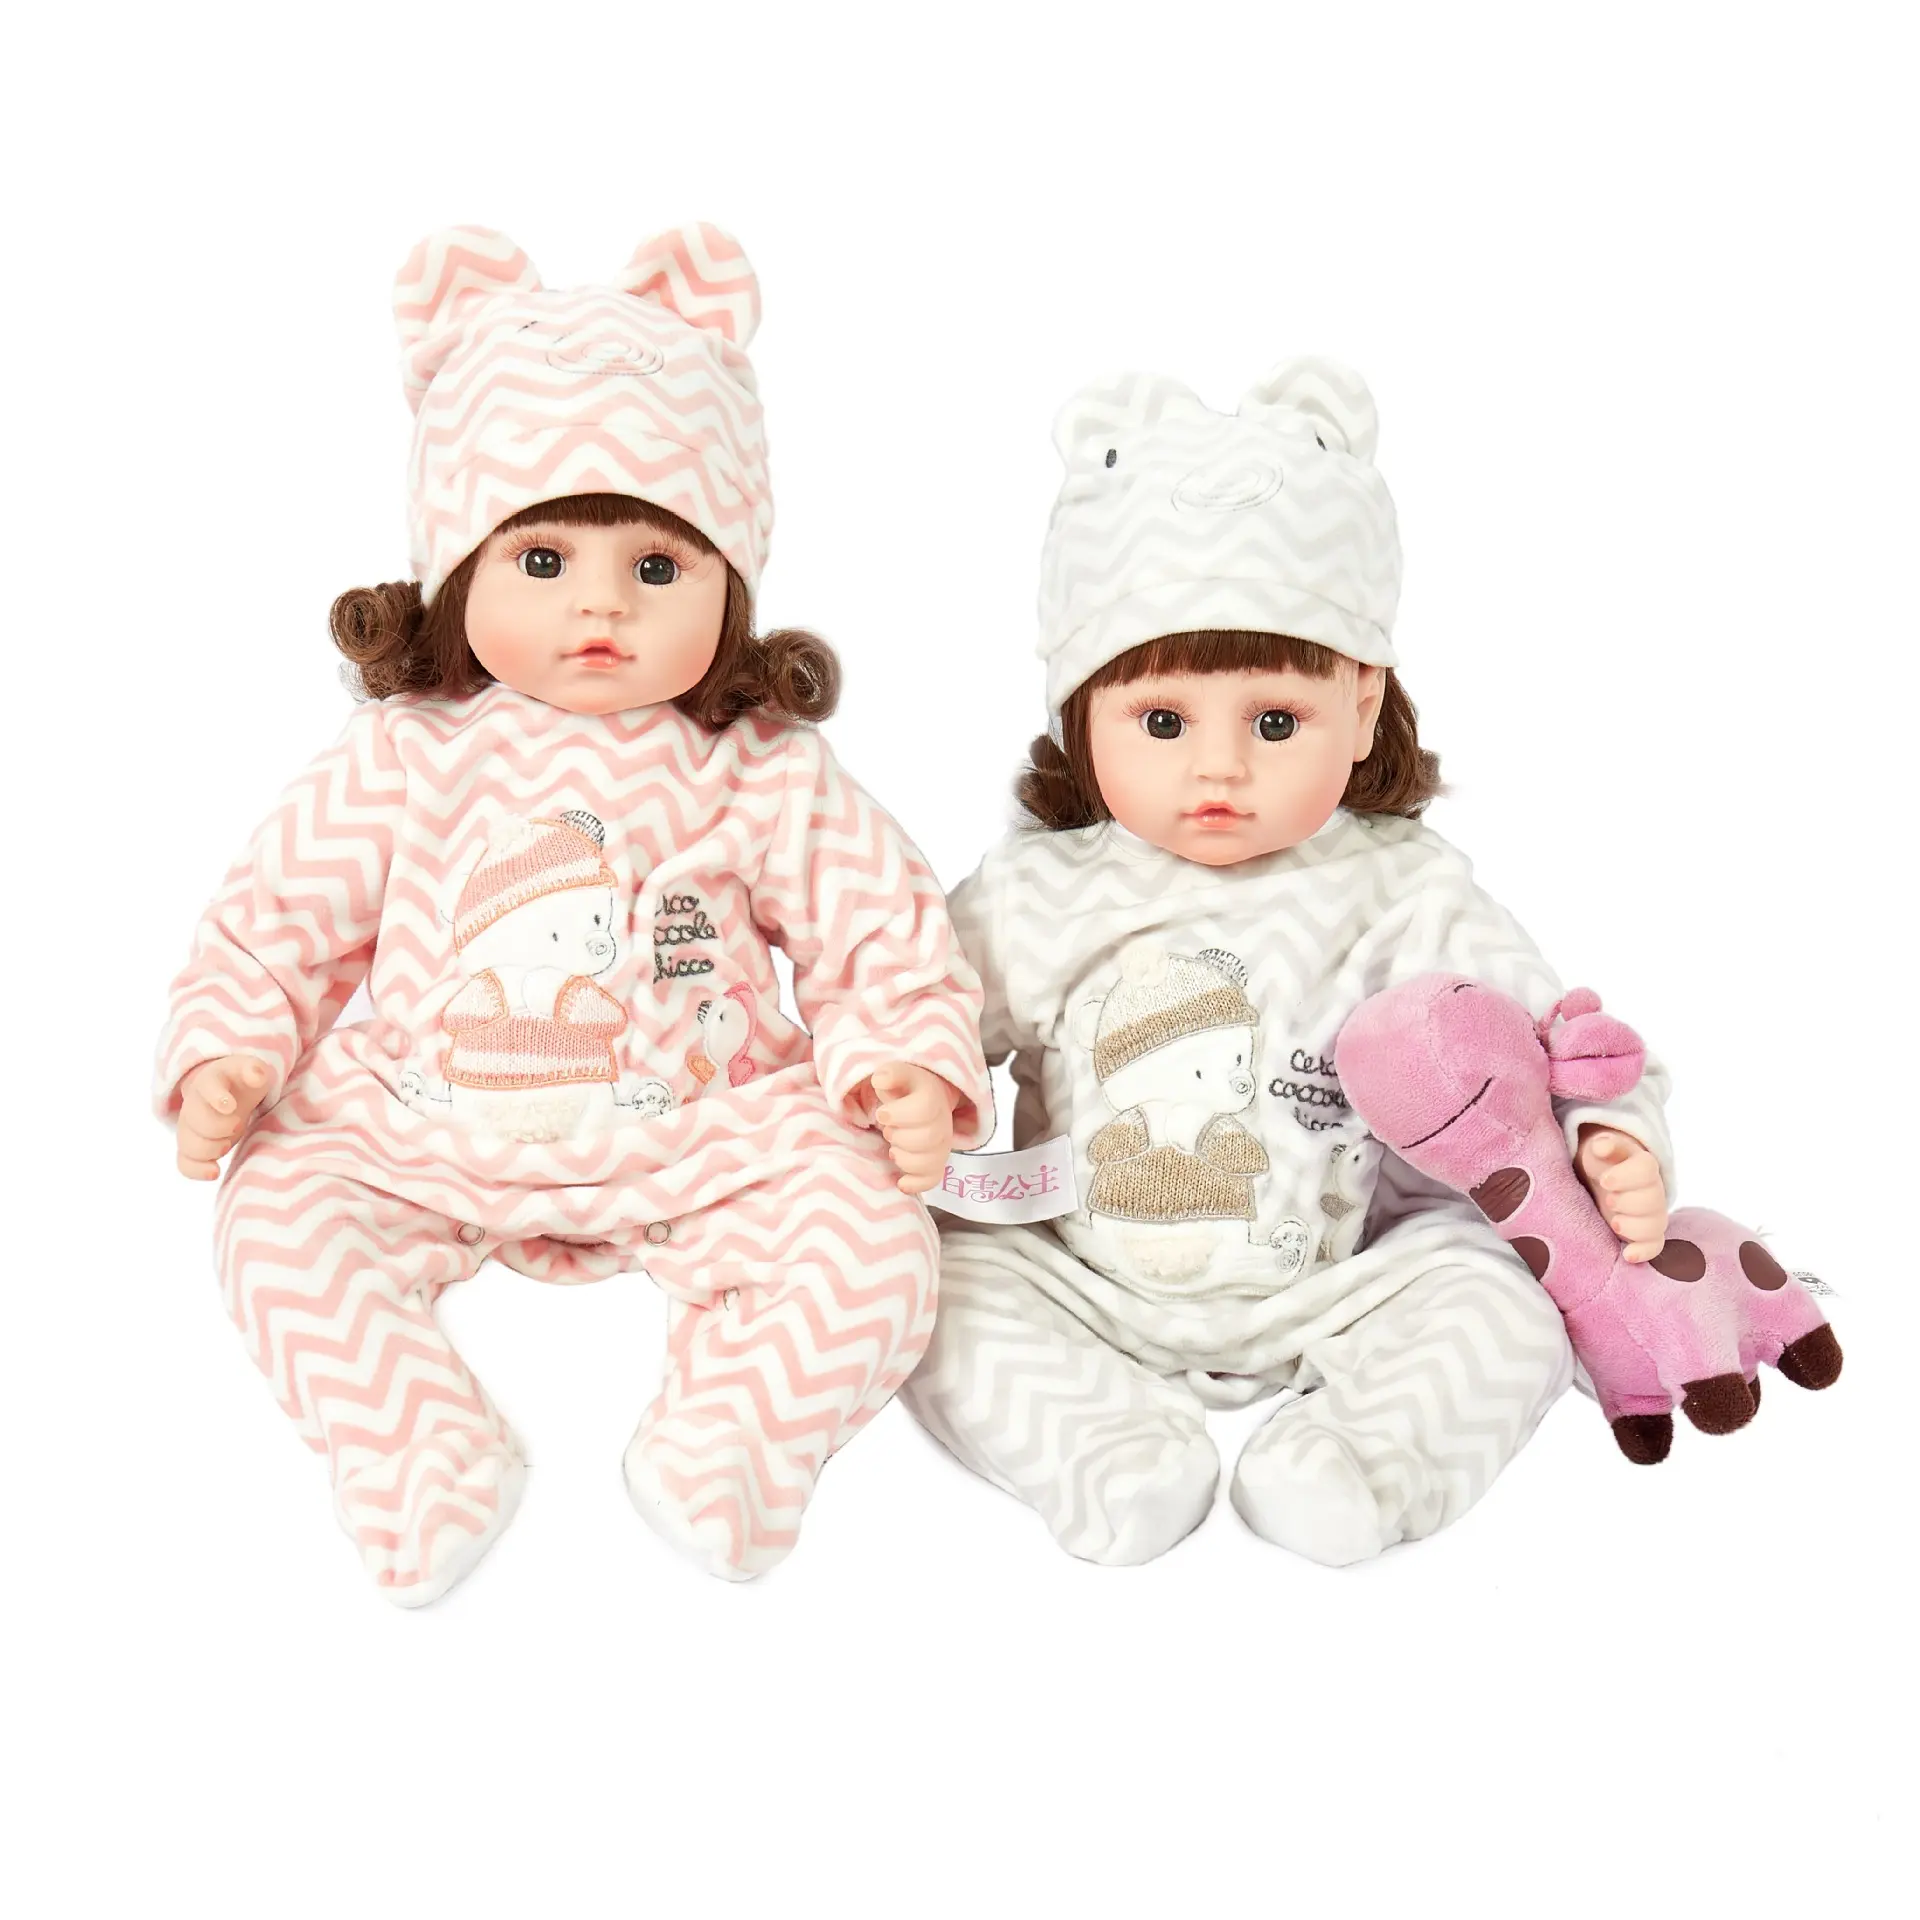 13.5インチシミュレーションベビードールおもちゃ睡眠インタラクティブ45cm人形向き誘導早期教育子供のおもちゃ人形